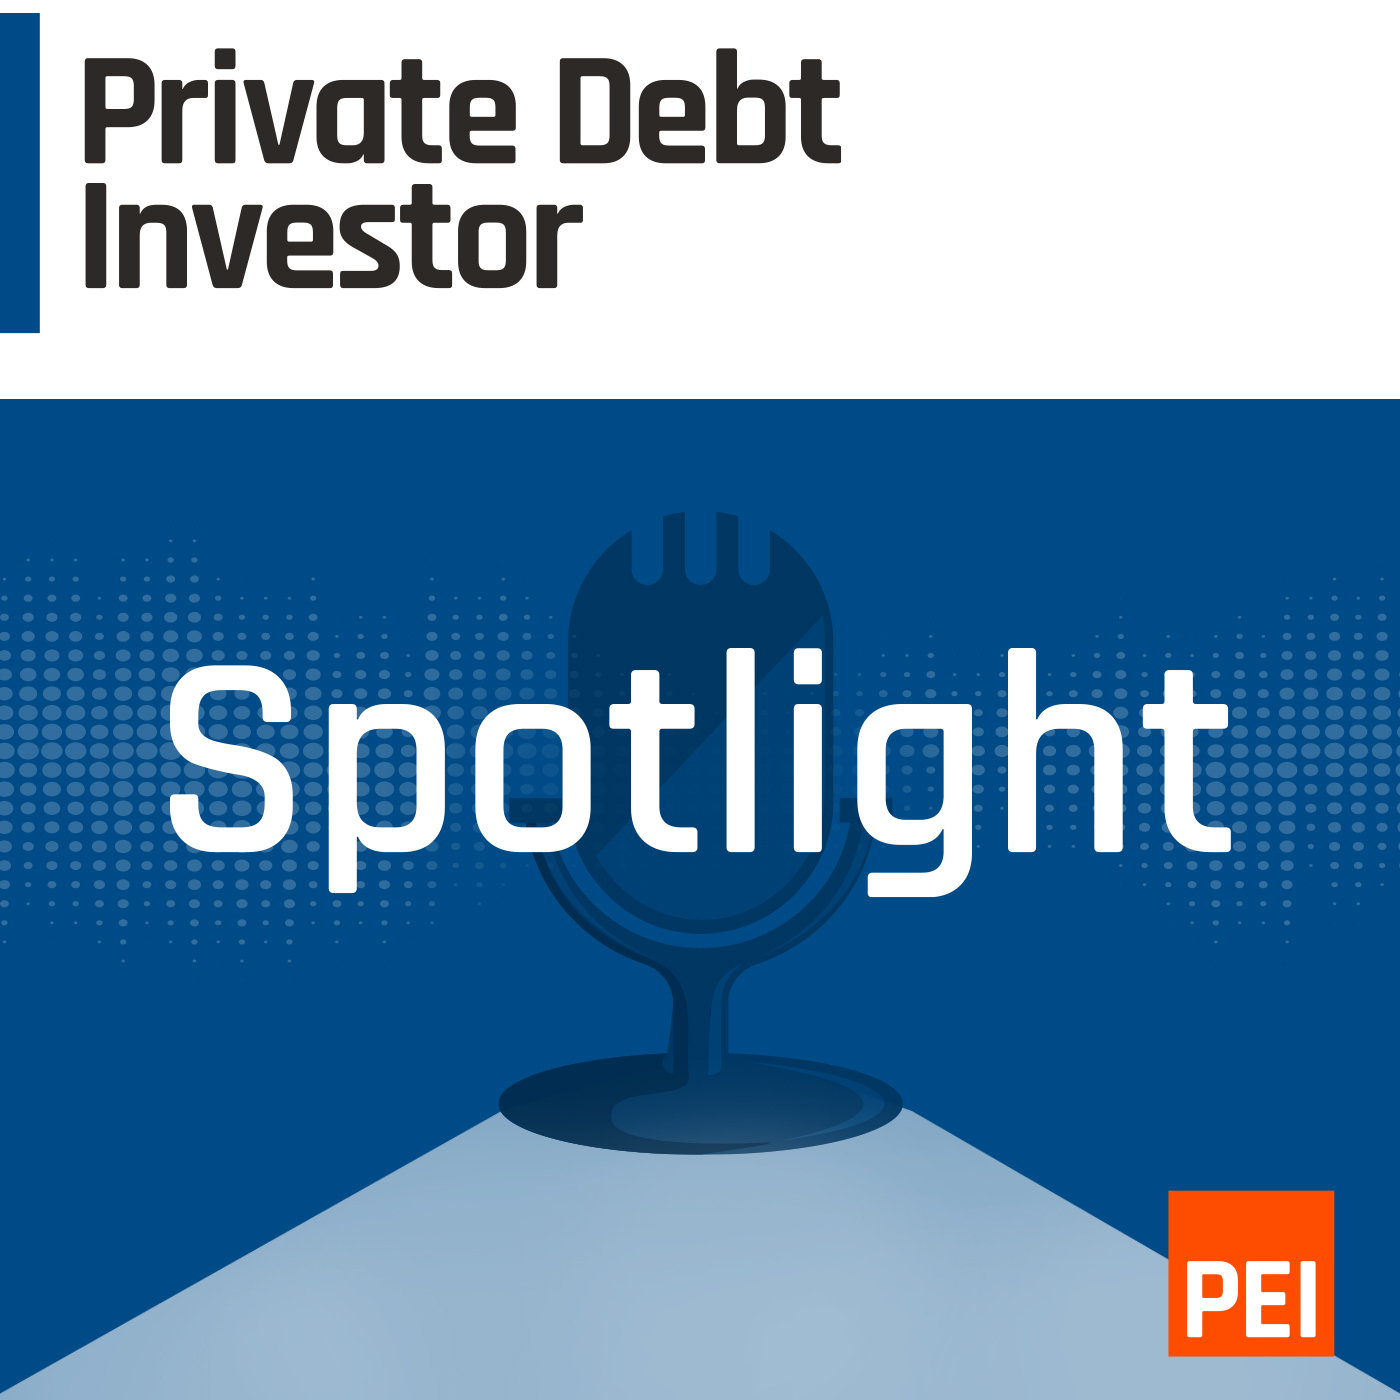 Private Debt Investor